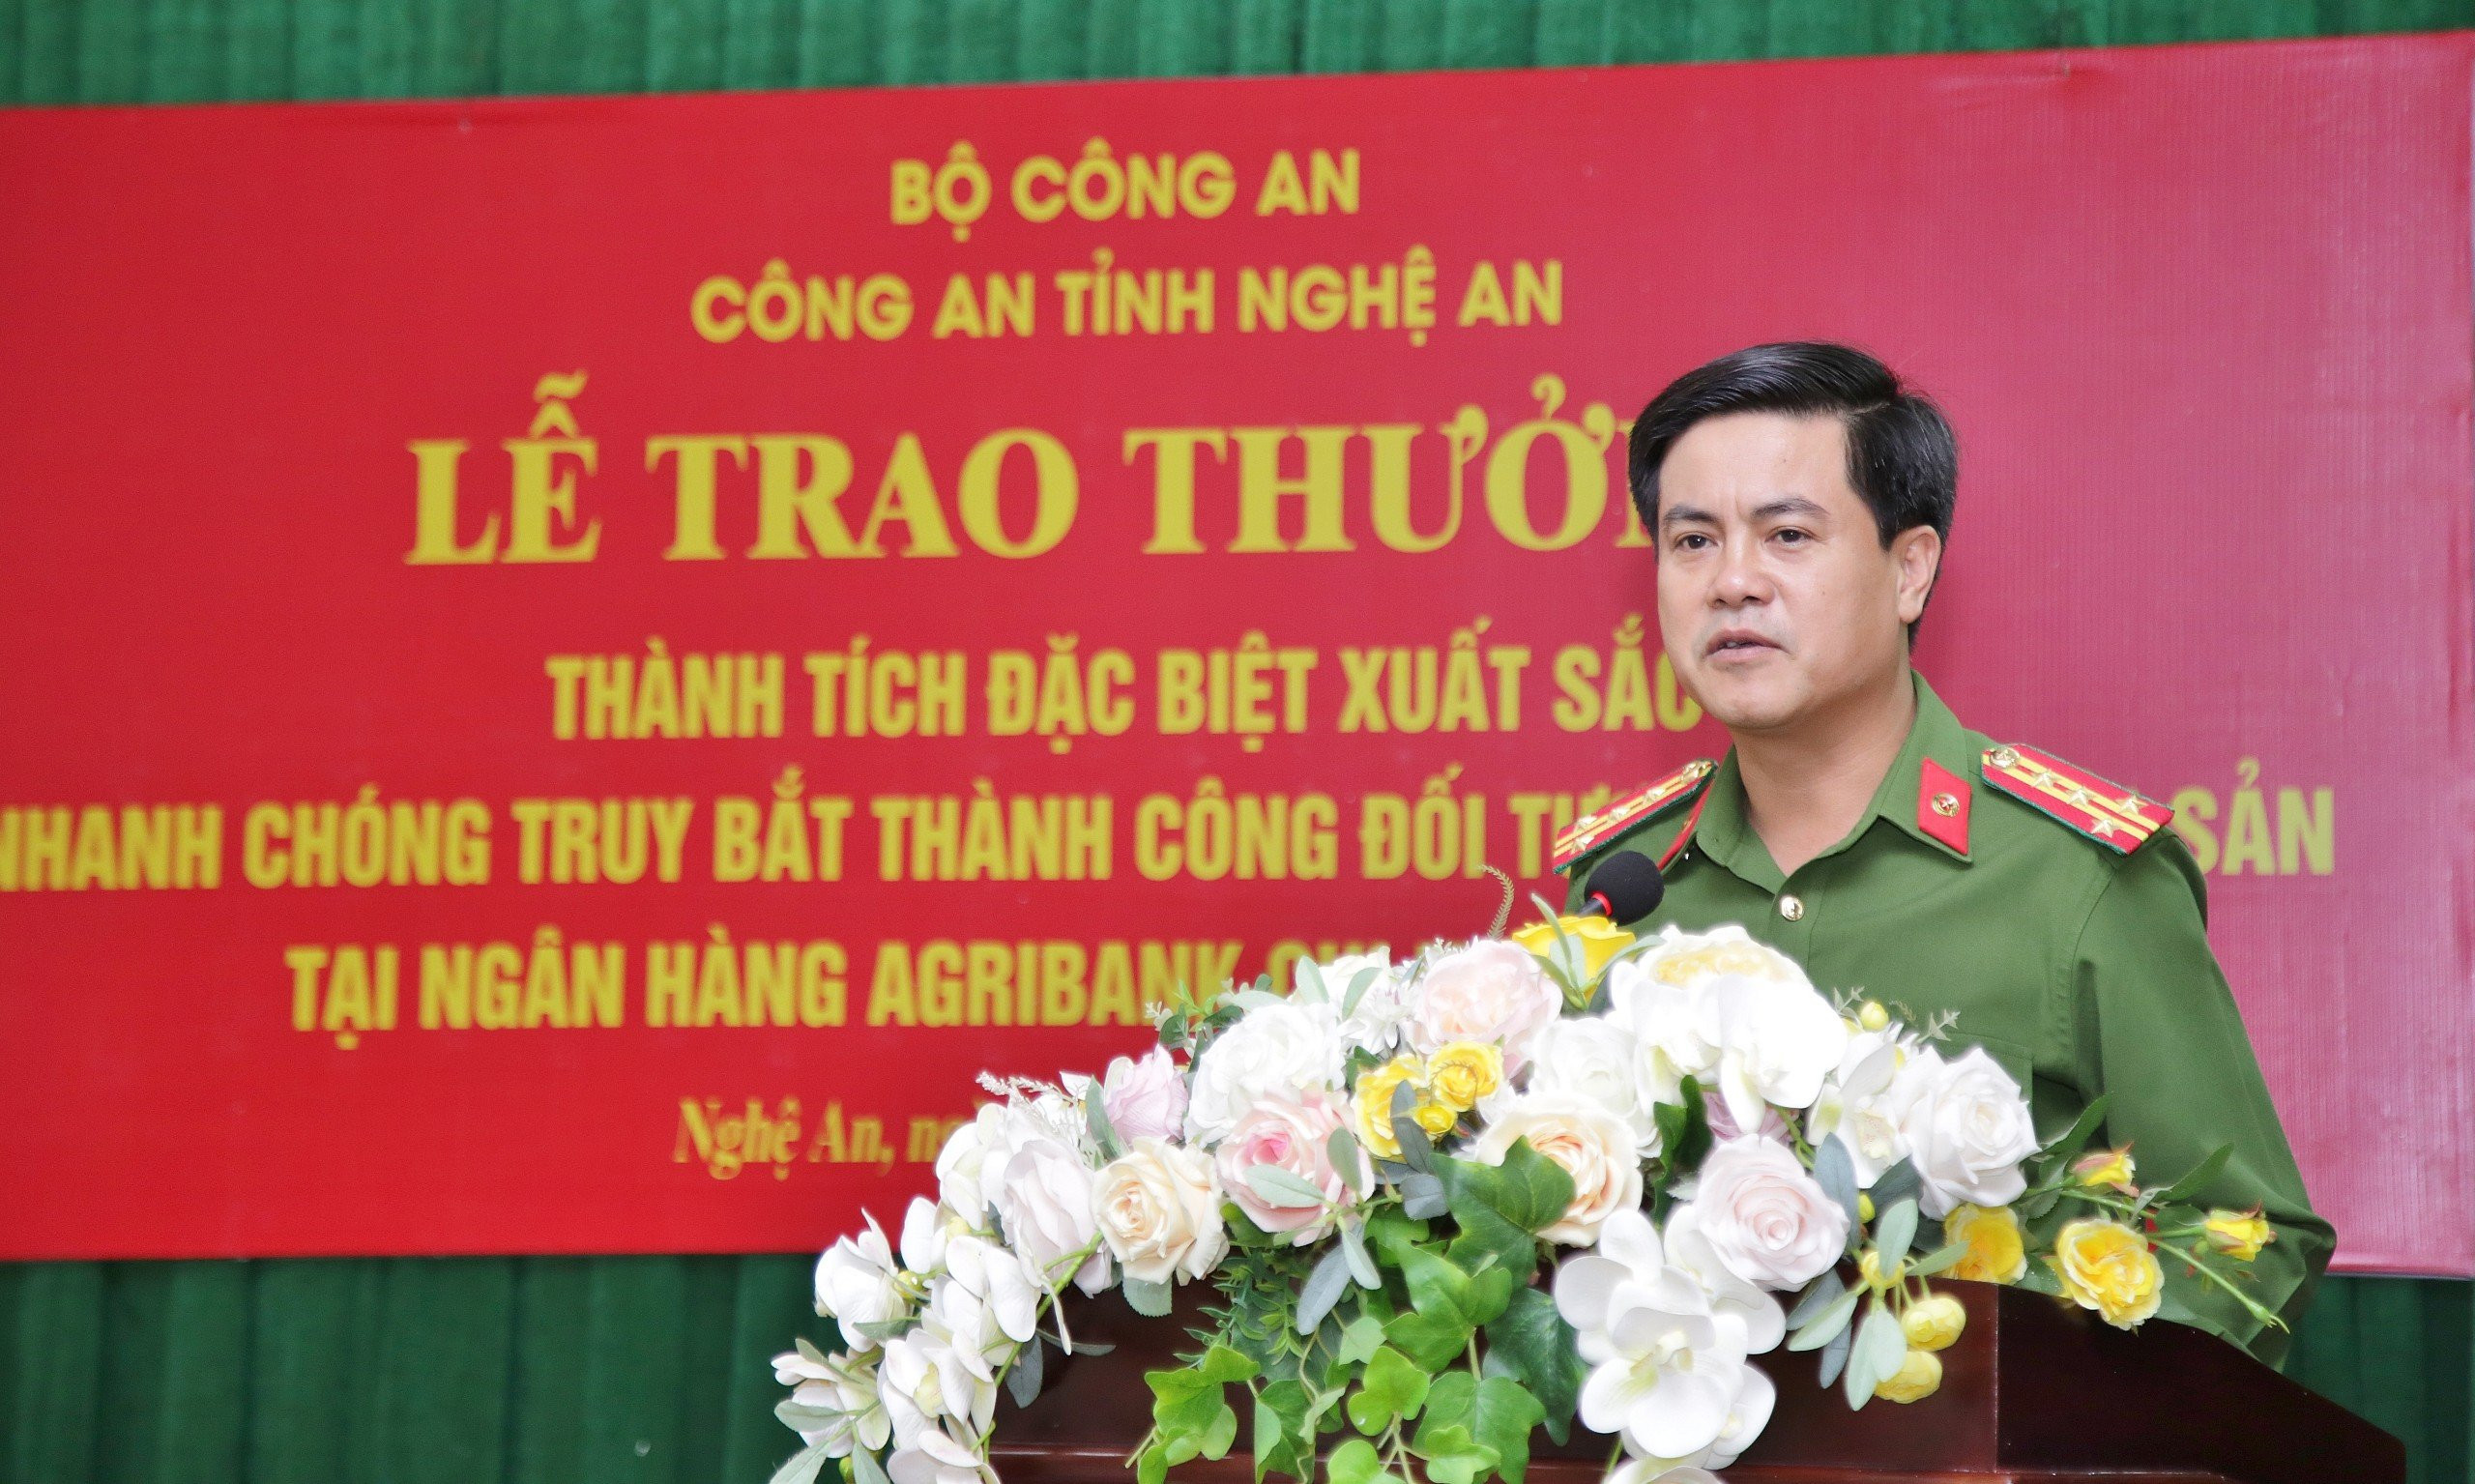 Đồng chí Đại tá Nguyễn Đức Hải, Phó Giám đốc Công an tỉnh phát biểu tại Lễ trao thưởng. Ảnh: Phạm Thủy - Minh Khôi.